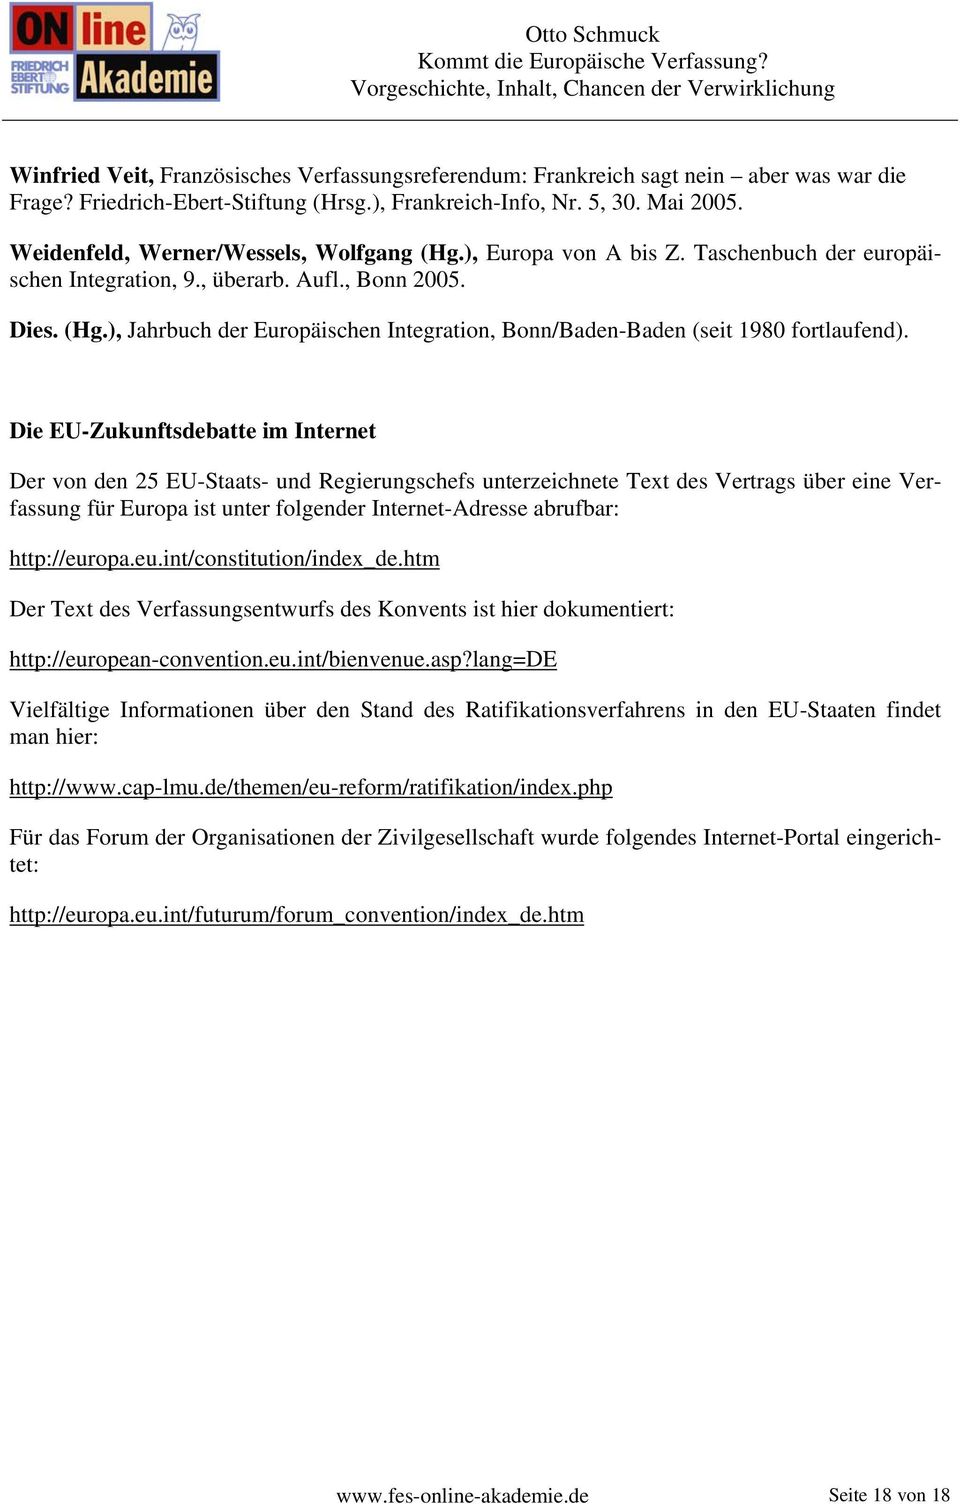 Die EU-Zukunftsdebatte im Internet Der von den 25 EU-Staats- und Regierungschefs unterzeichnete Text des Vertrags über eine Verfassung für Europa ist unter folgender Internet-Adresse abrufbar: